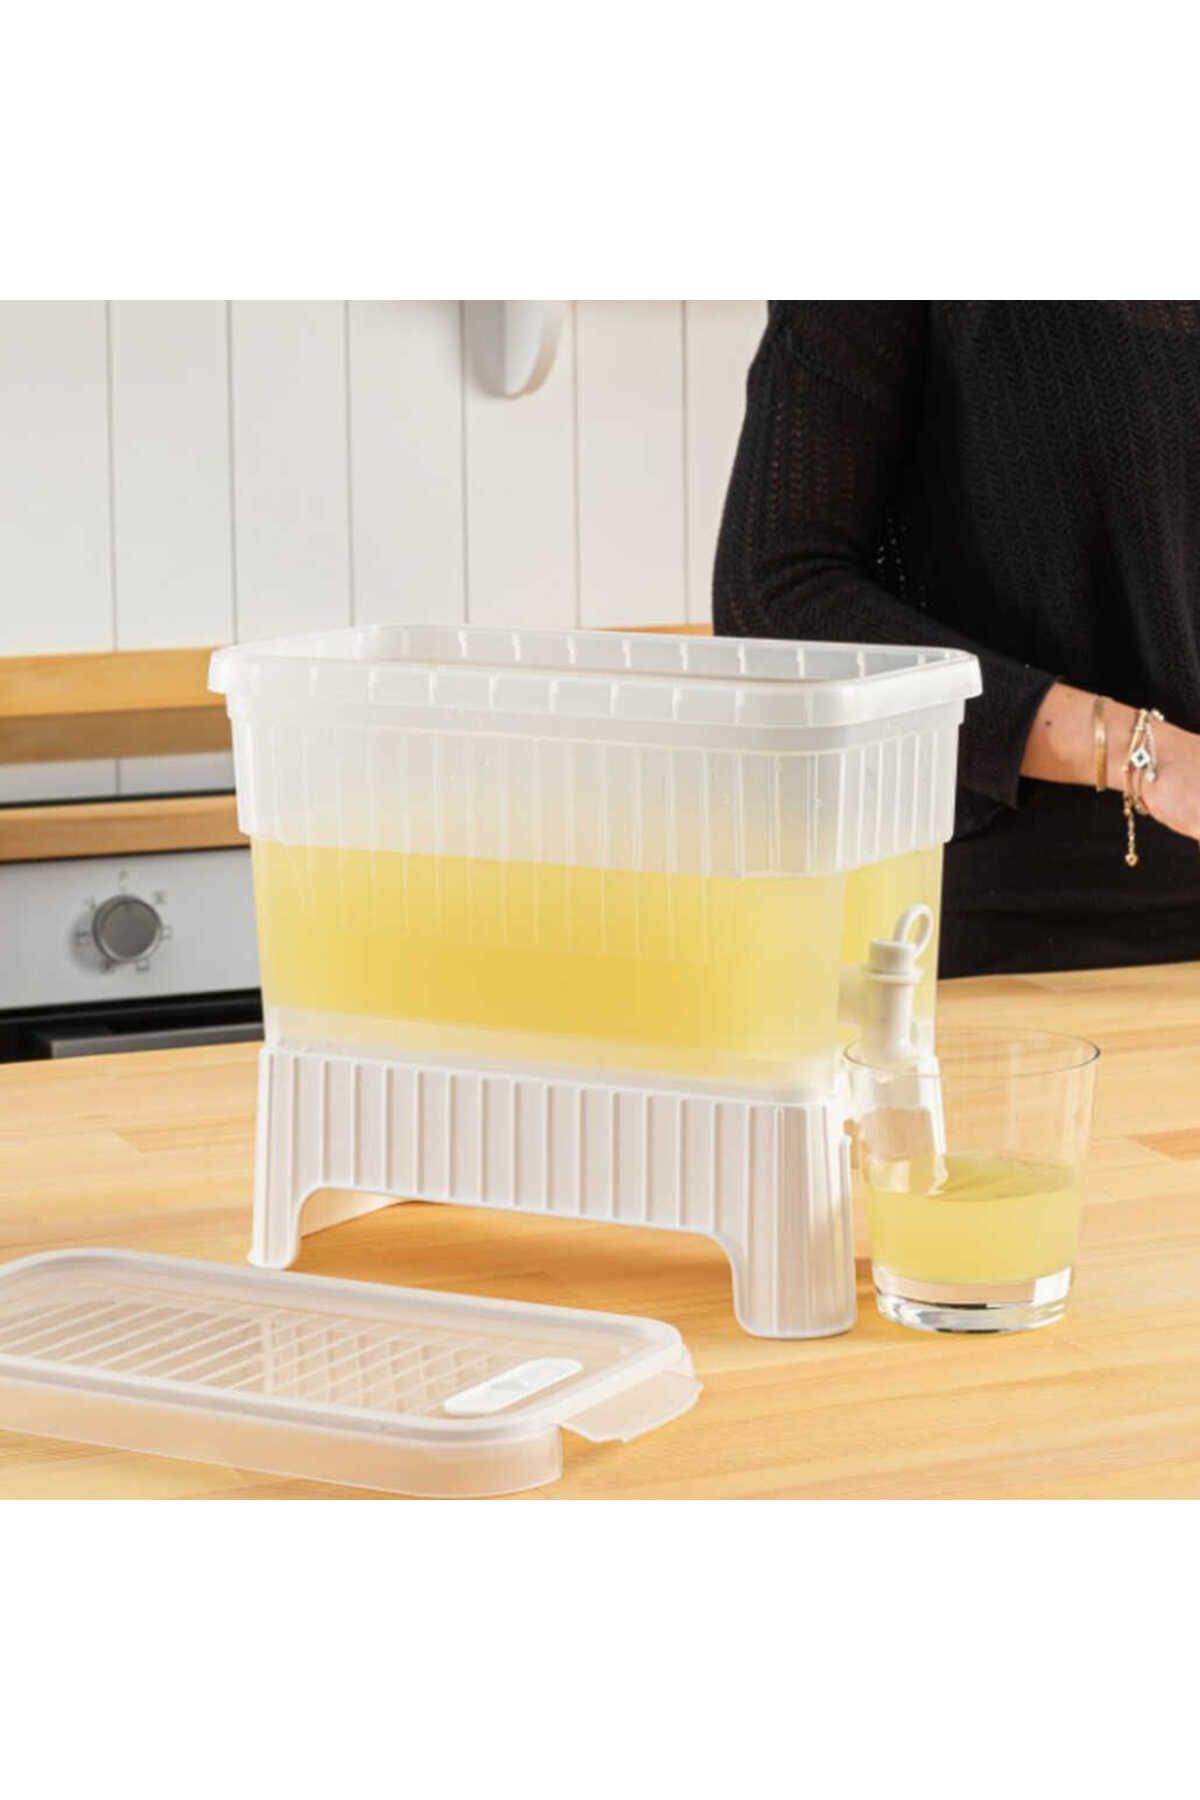 ECheffs Beyaz Buzdolabı İçi Musluklu Ayaklı Su -limonata - İçecek Sebili Piknik Bidonu 4 Lt (4172)